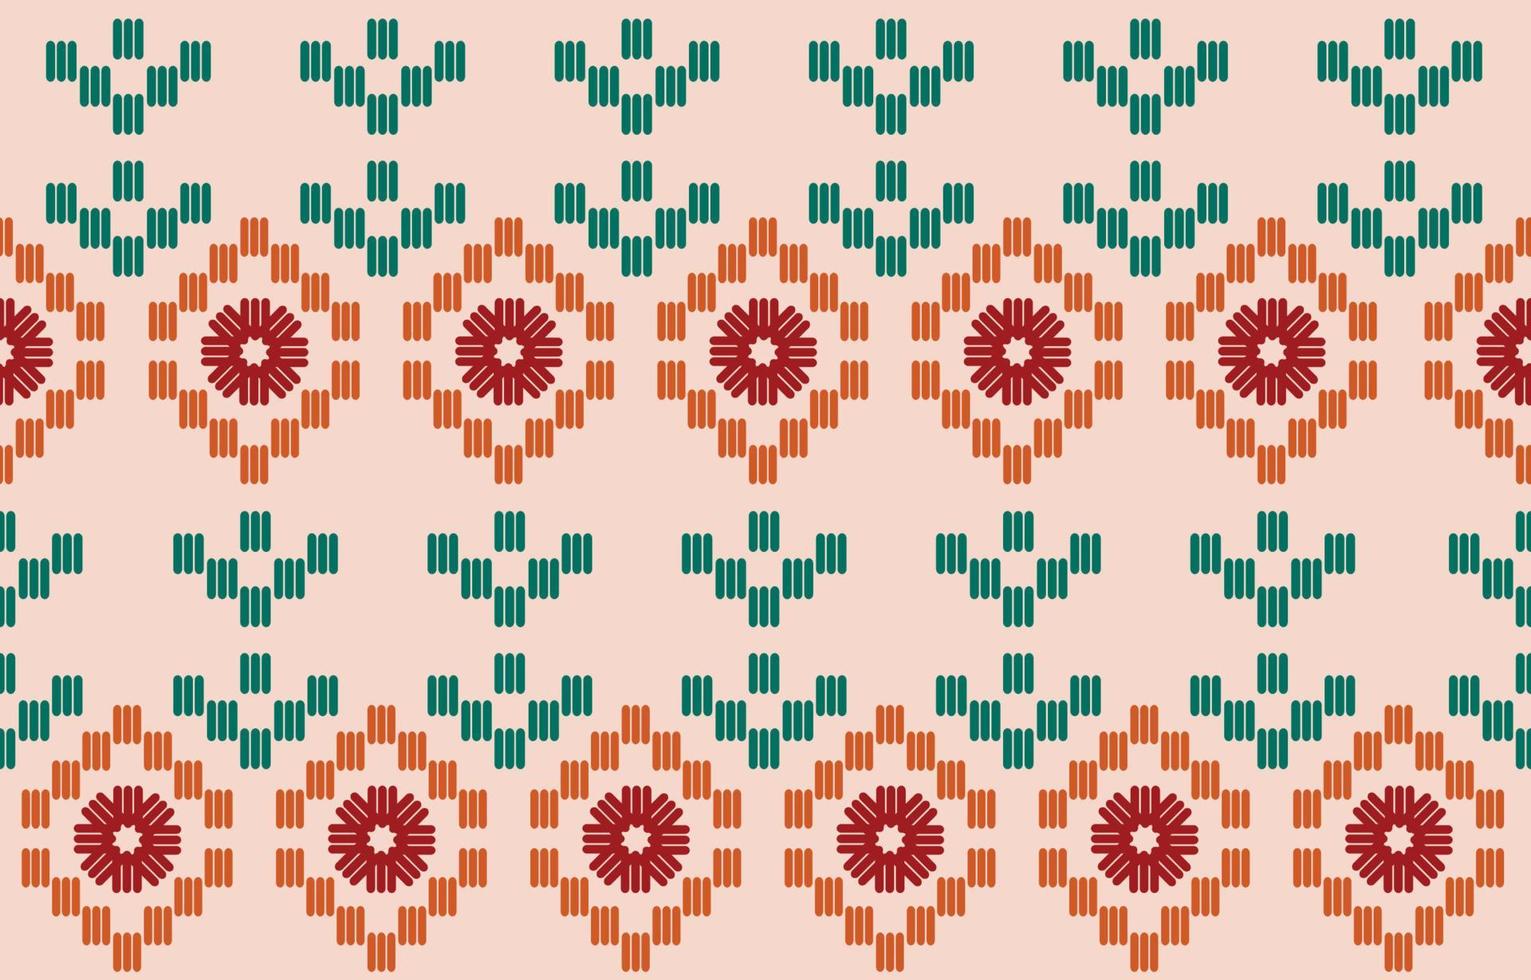 hermoso patrón de bordado tejido floral hecho a mano. patrón sin costuras navajo en estampado de adorno de arte geométrico azteca tribal, mexicano. diseño para alfombras, papel pintado, envoltura, tela y textil. vector